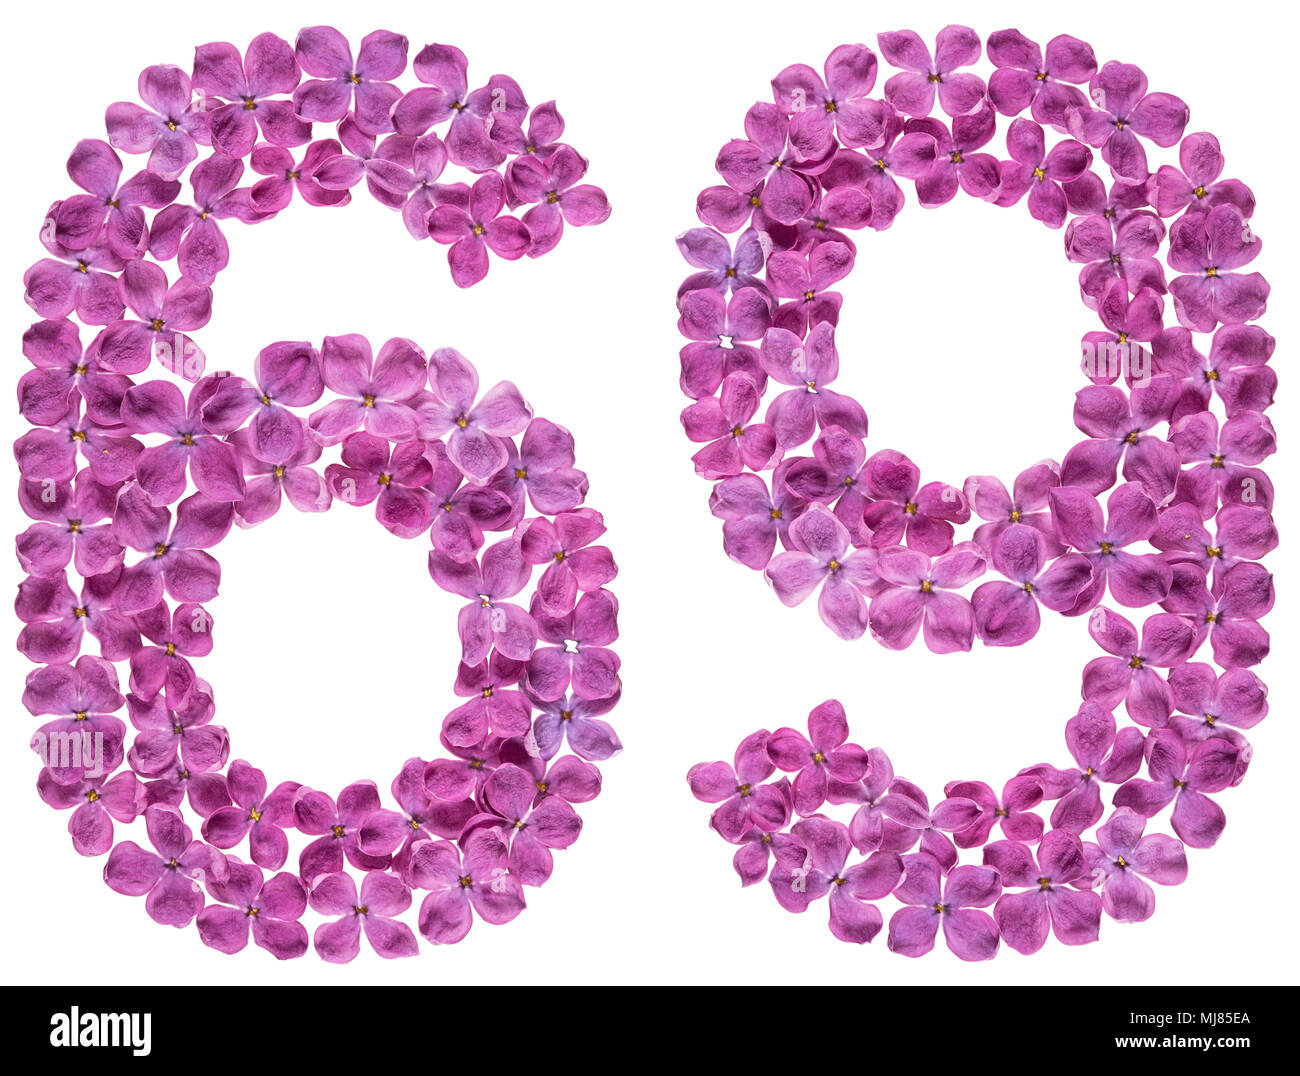 Chiffre arabe 69, soixante-neuf, à partir de fleurs de lilas, isolé sur fond blanc Banque D'Images